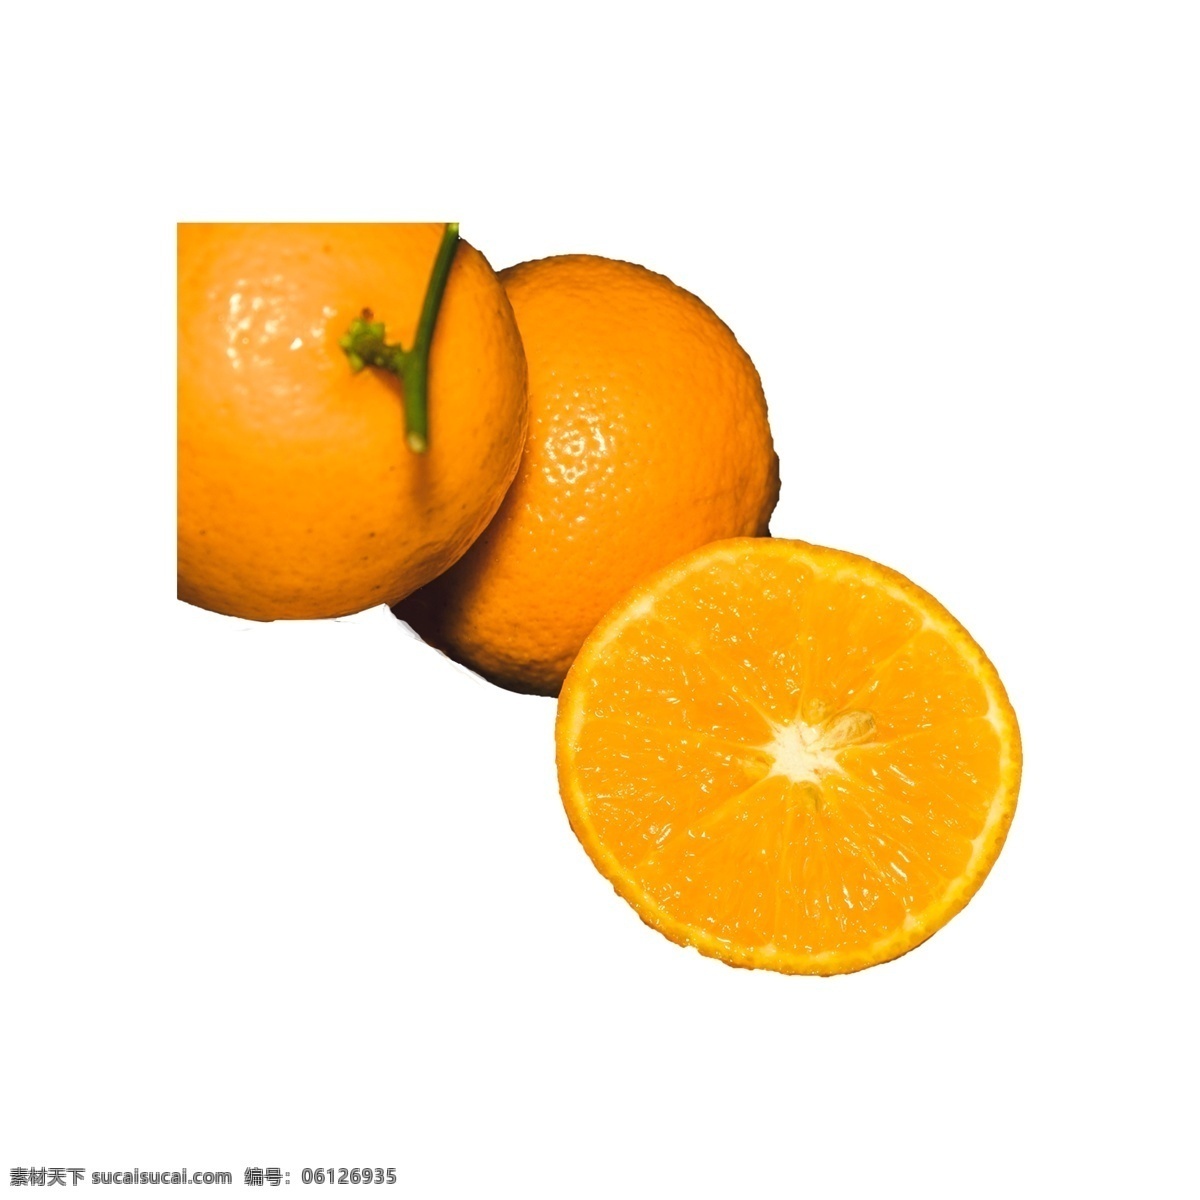 橙子 实拍 免 抠 实物拍摄 水果 橙子免抠 新鲜 营养 甜橙 水润多汁 植物 维生素 橙色 摆拍